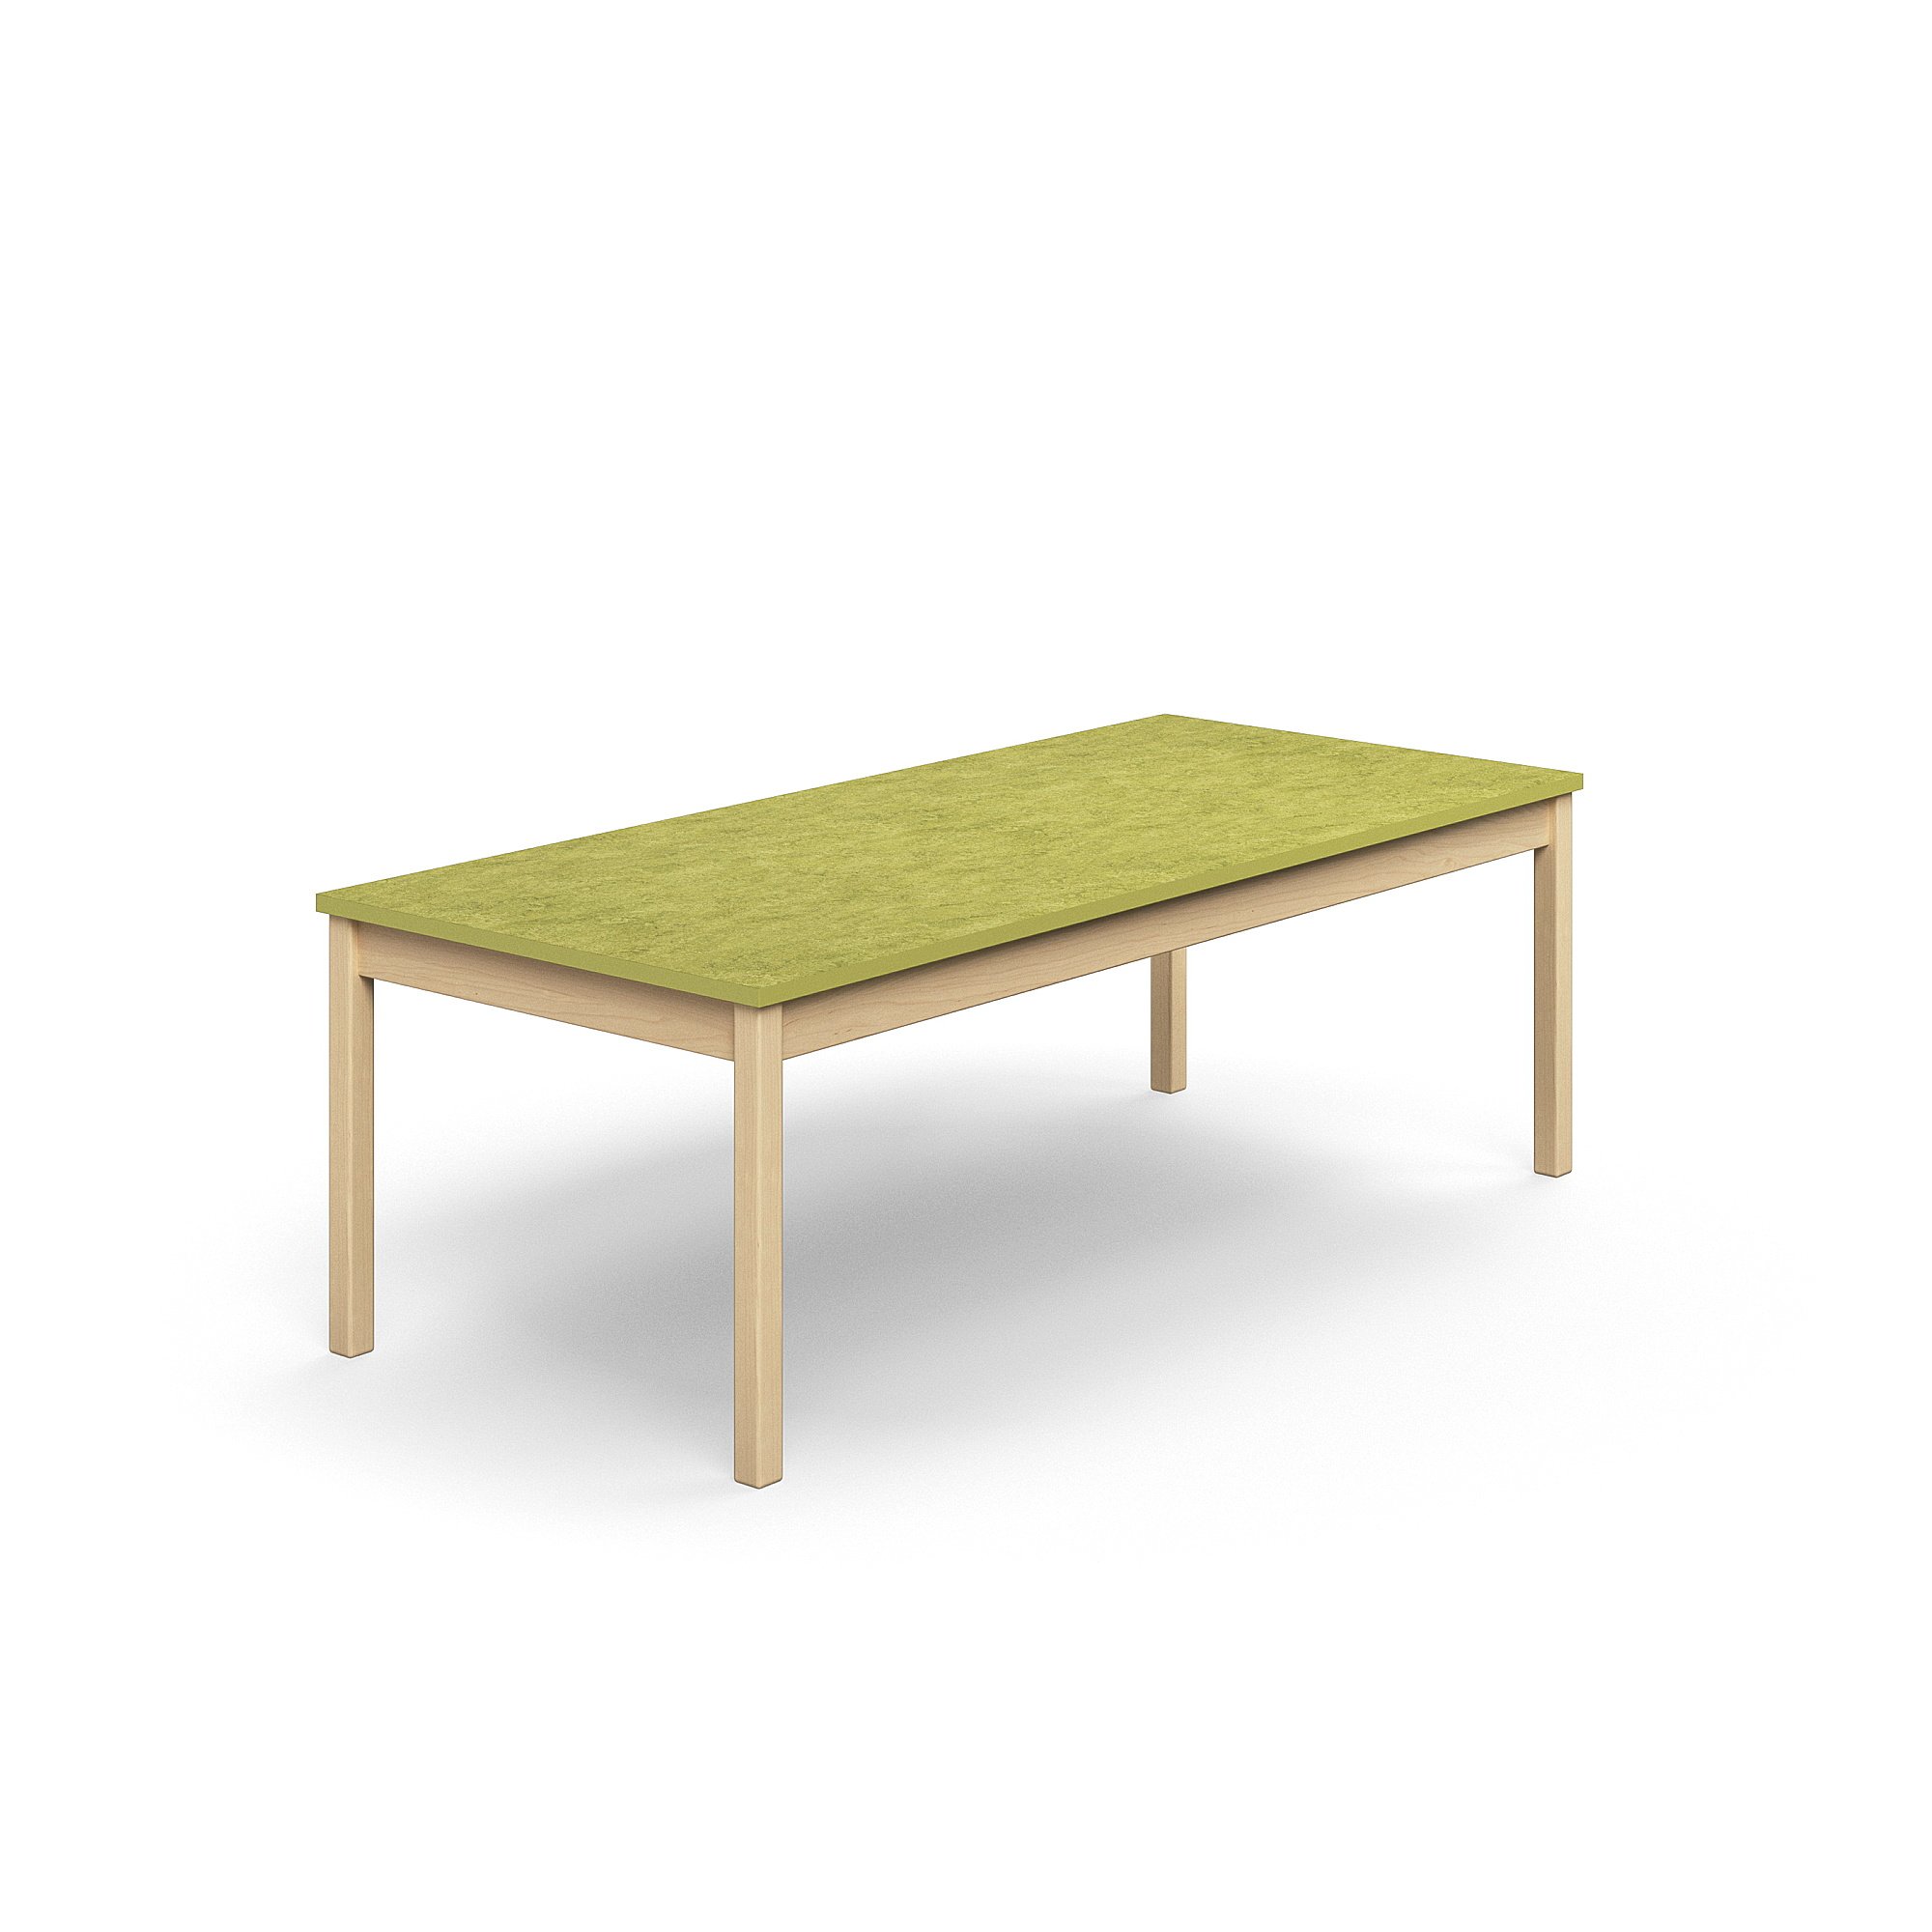 Stůl DECIBEL, 1800x800x590 mm, akustické linoleum, bříza/limetkově zelená